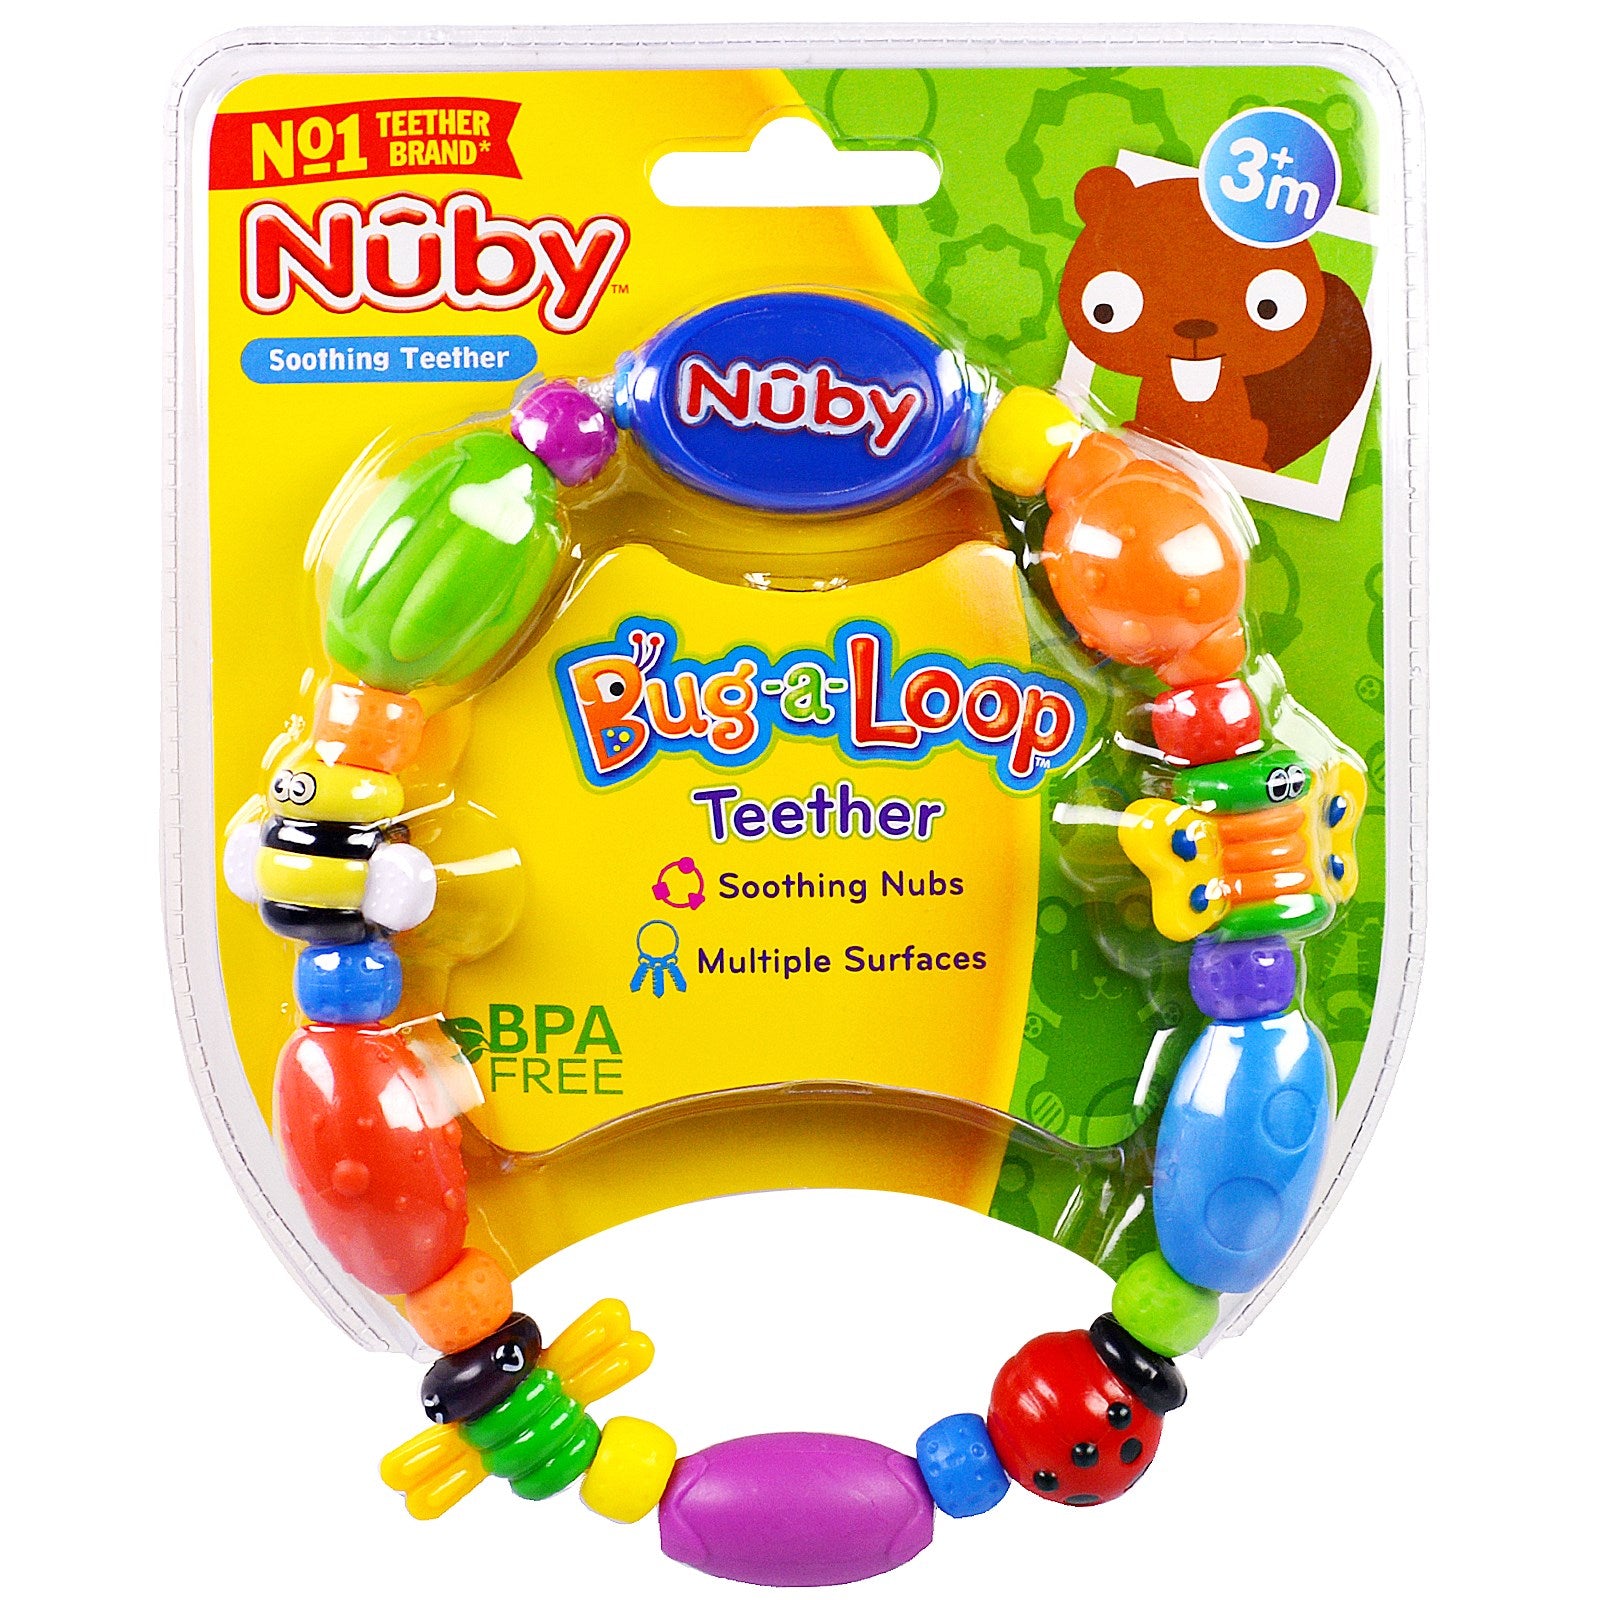 kidz-stuff-online - Nuby Bug-a-loop Teether